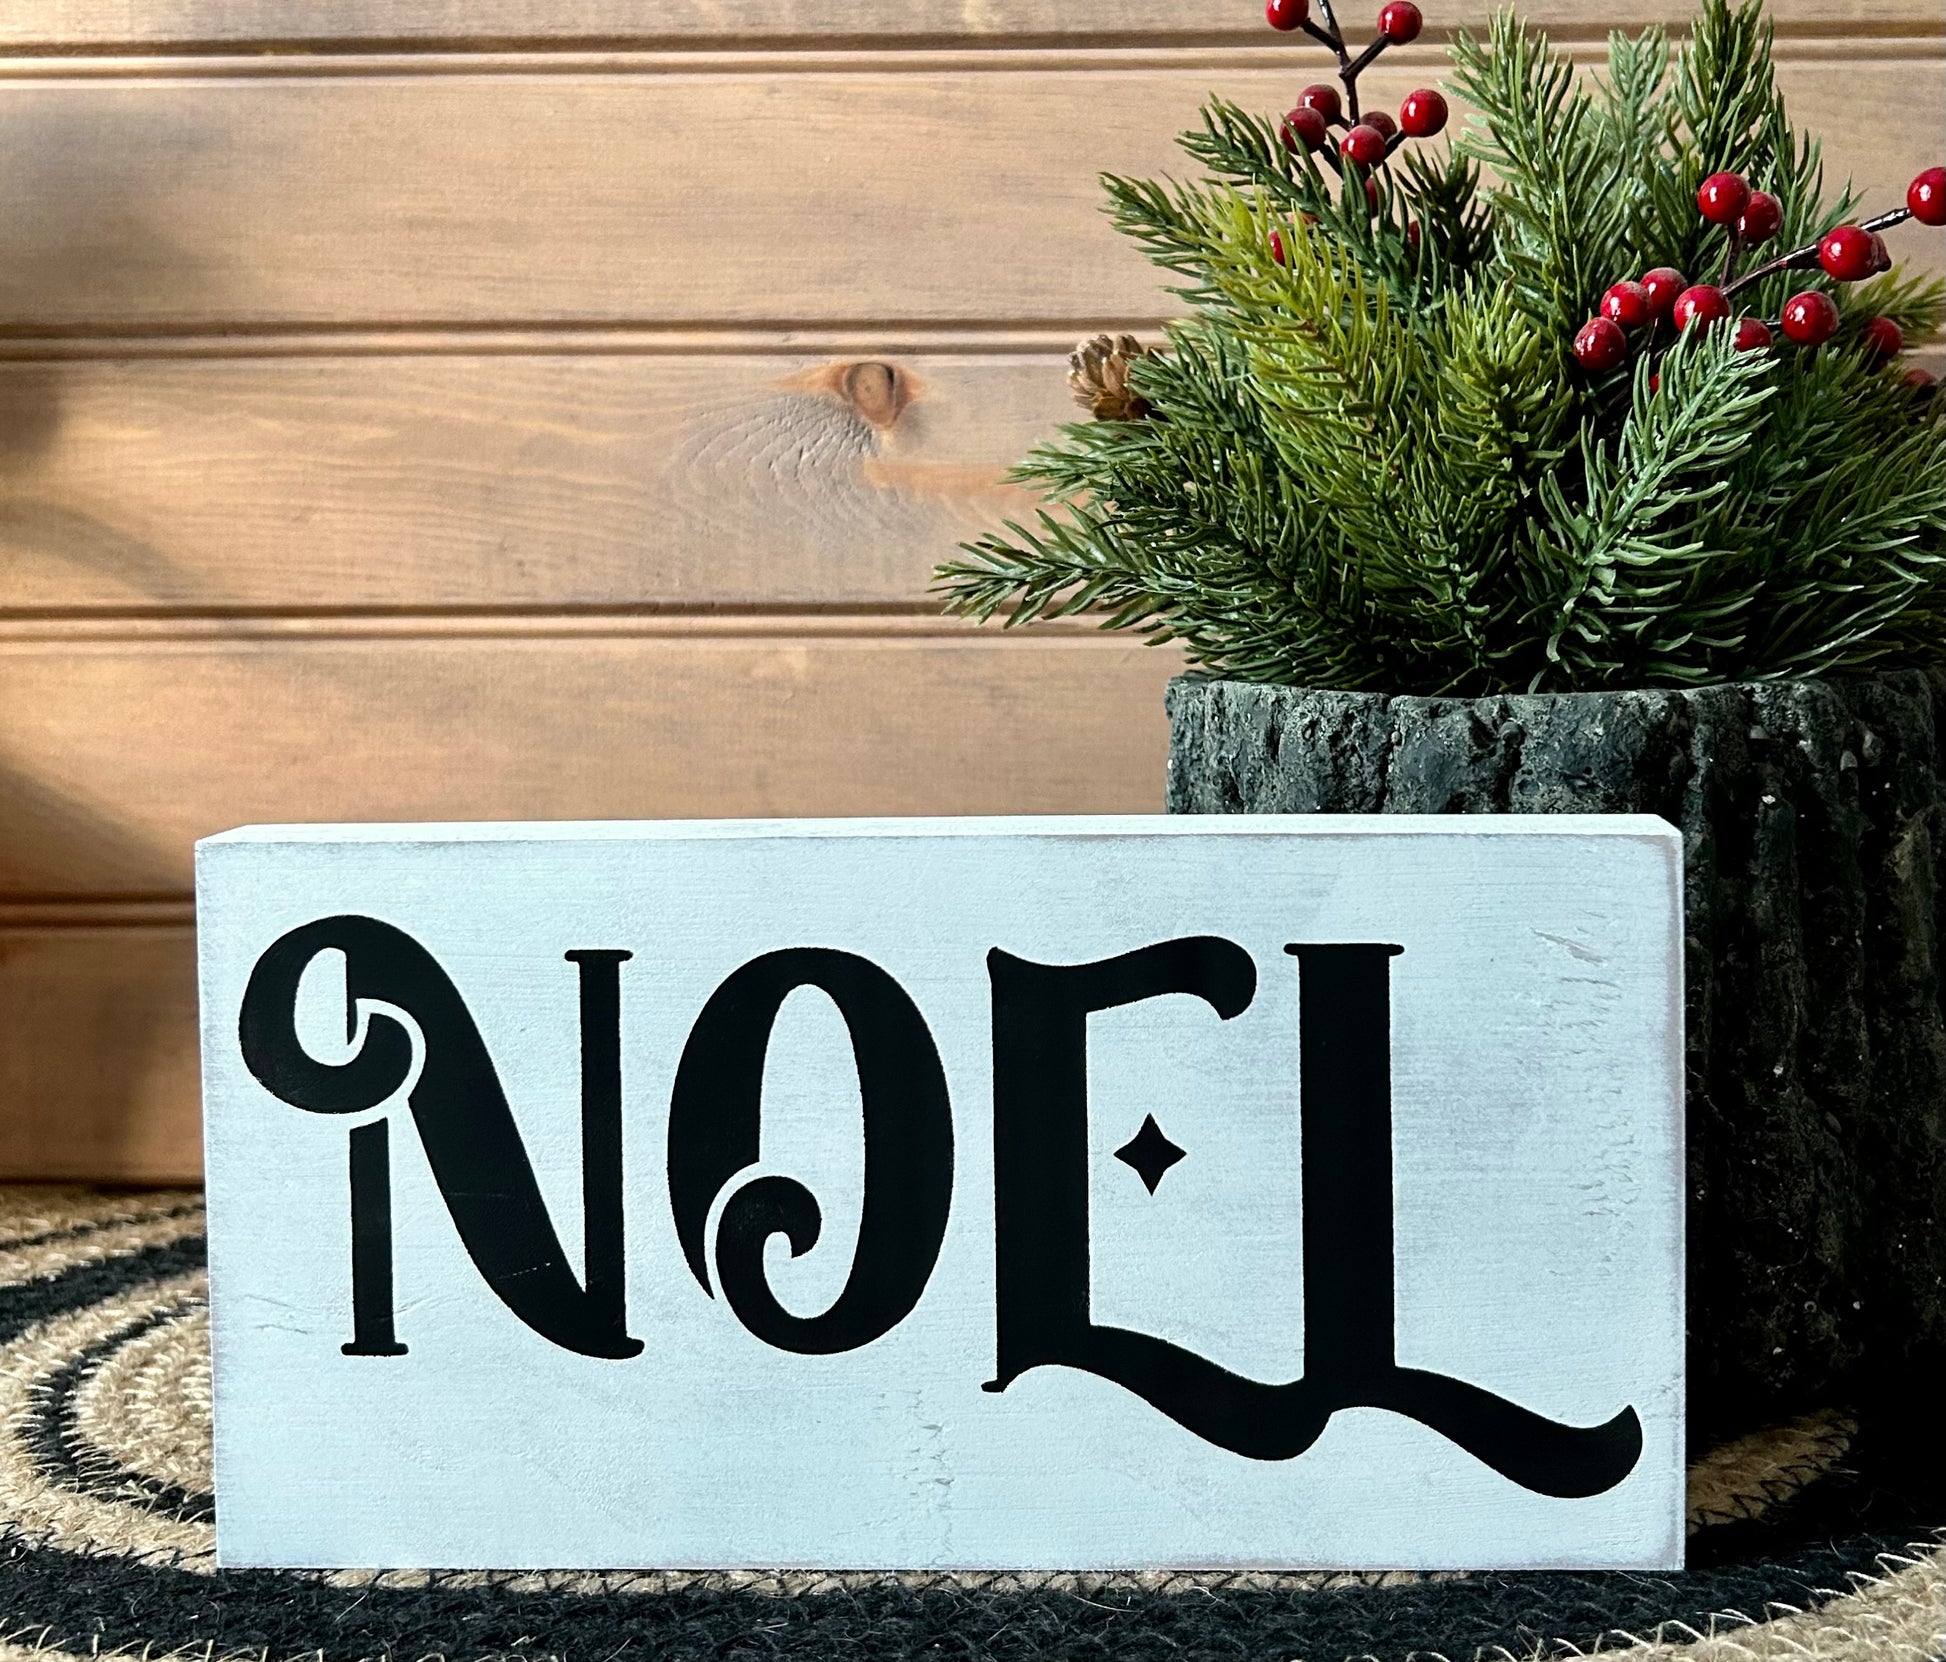 "Noel" wood sign